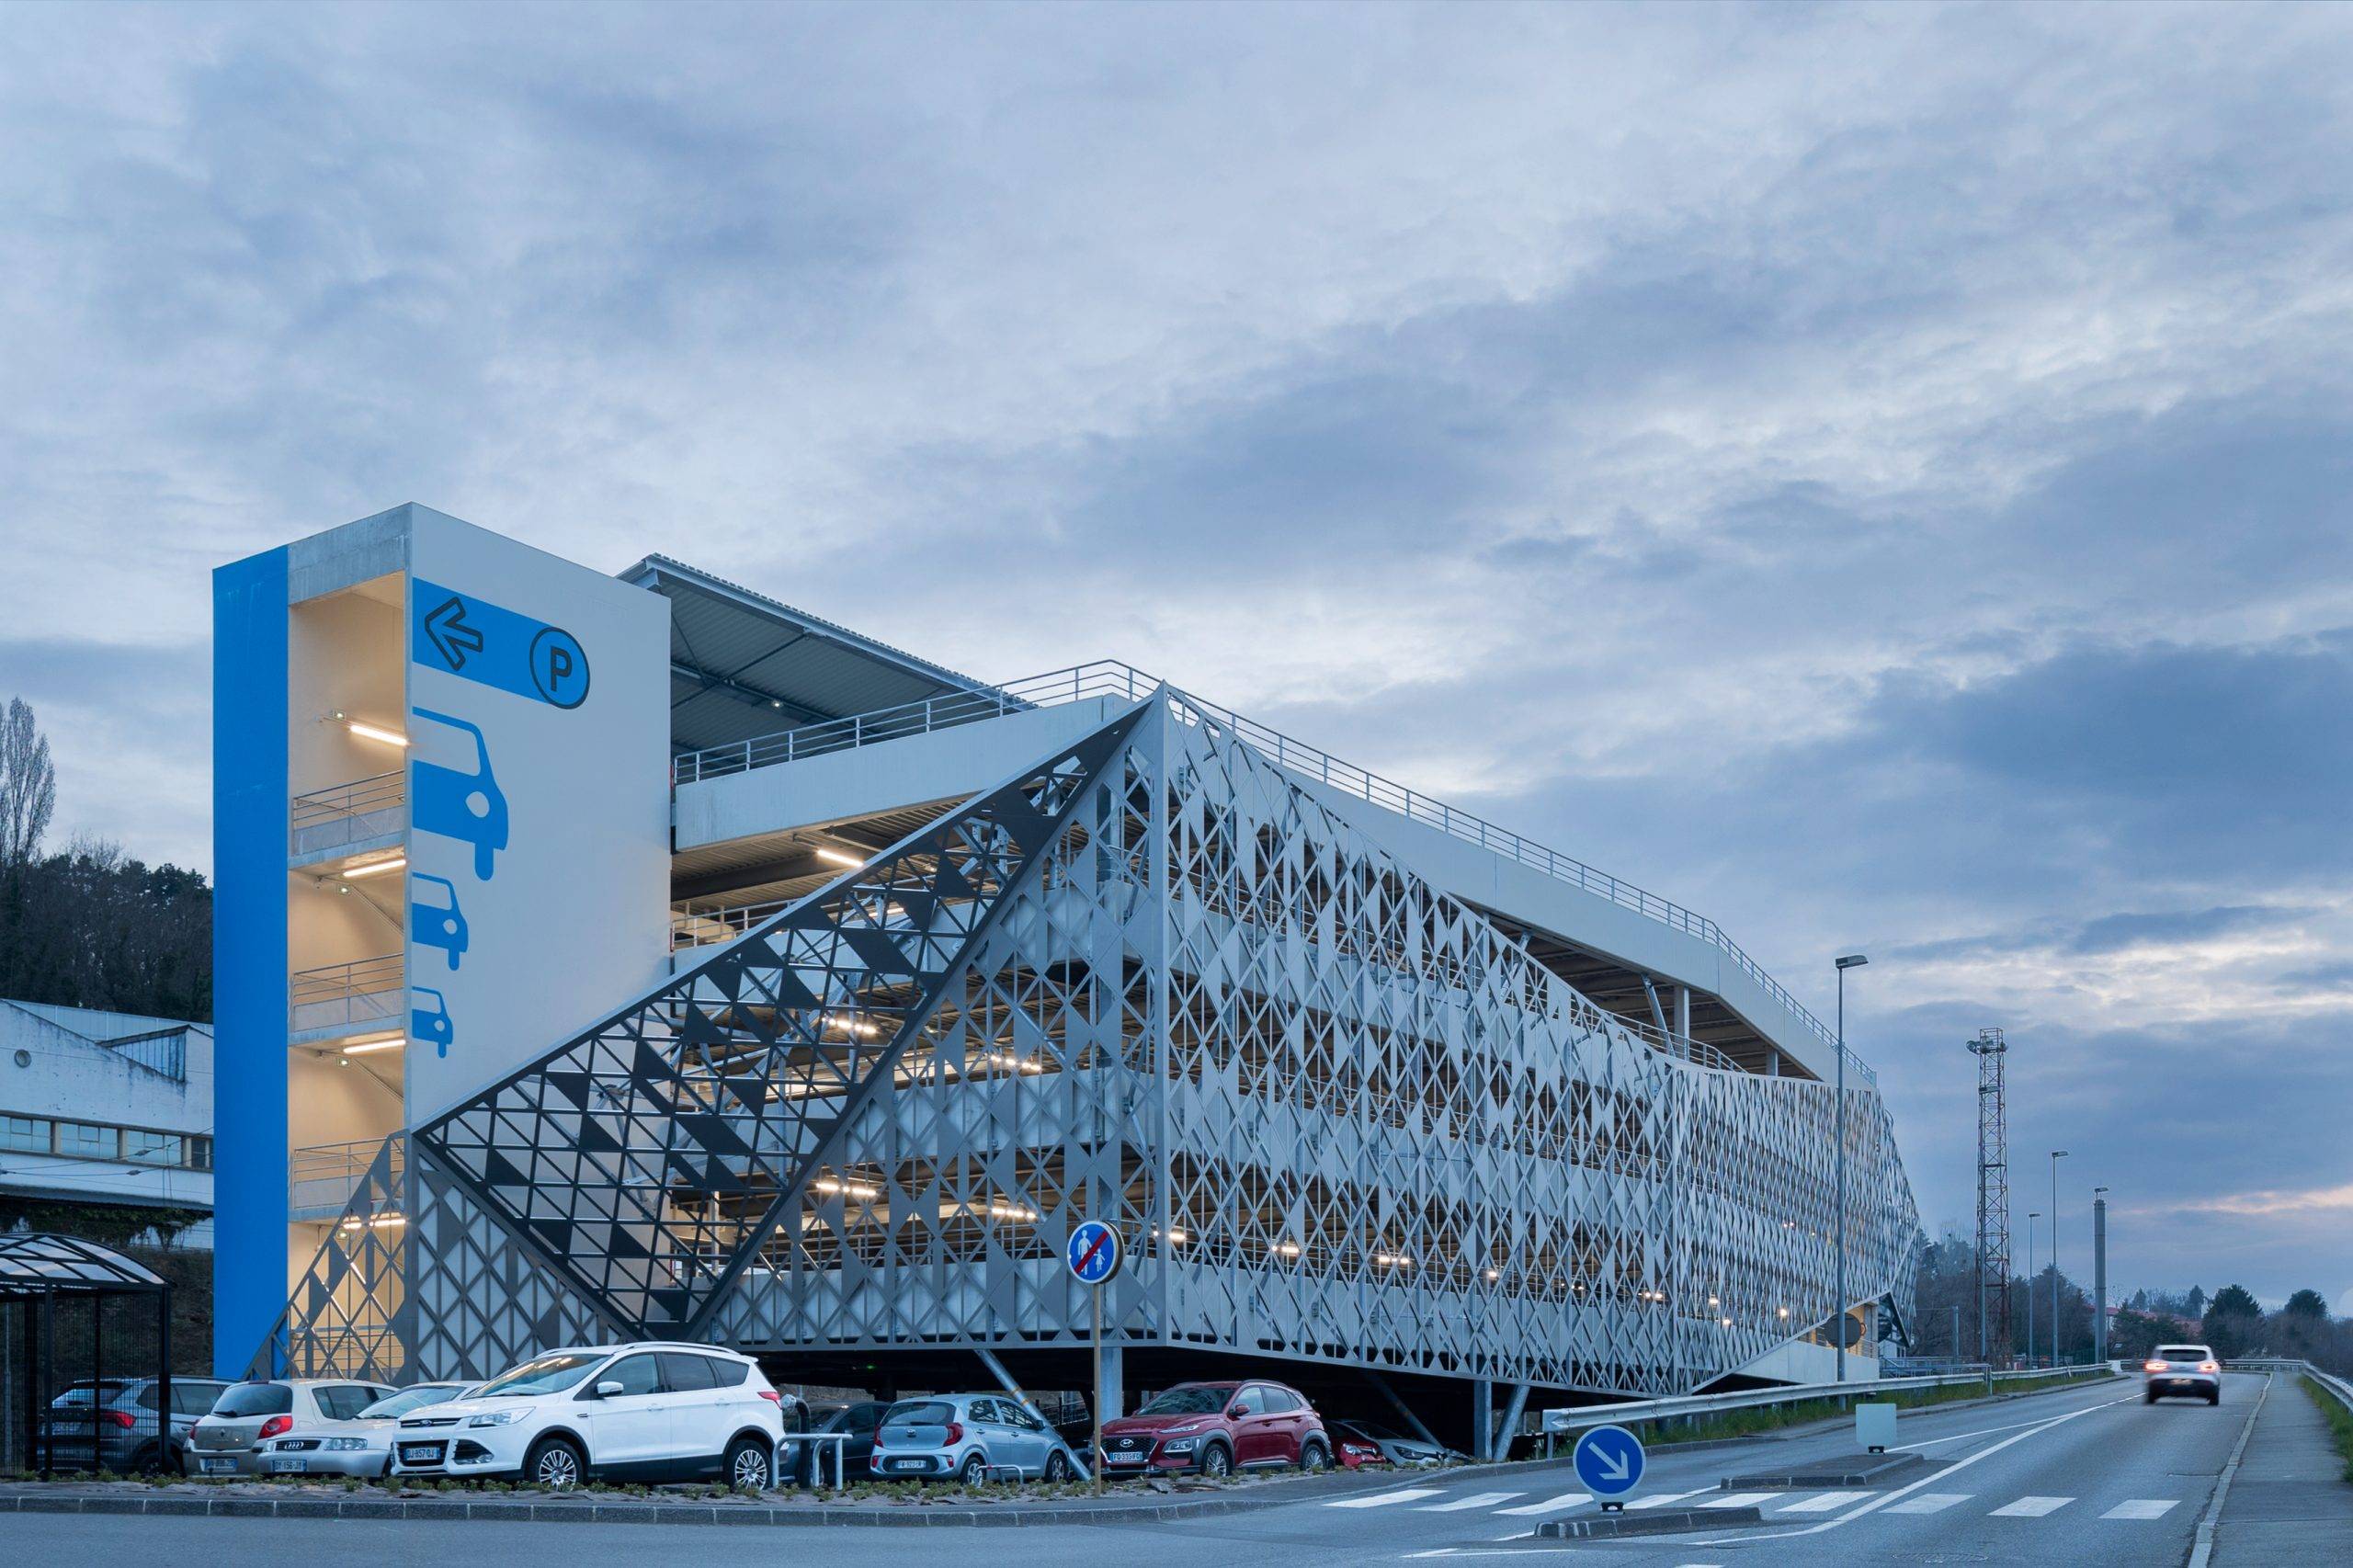 Parking Gare SNCF Evian avec ombrières photovoltaïques